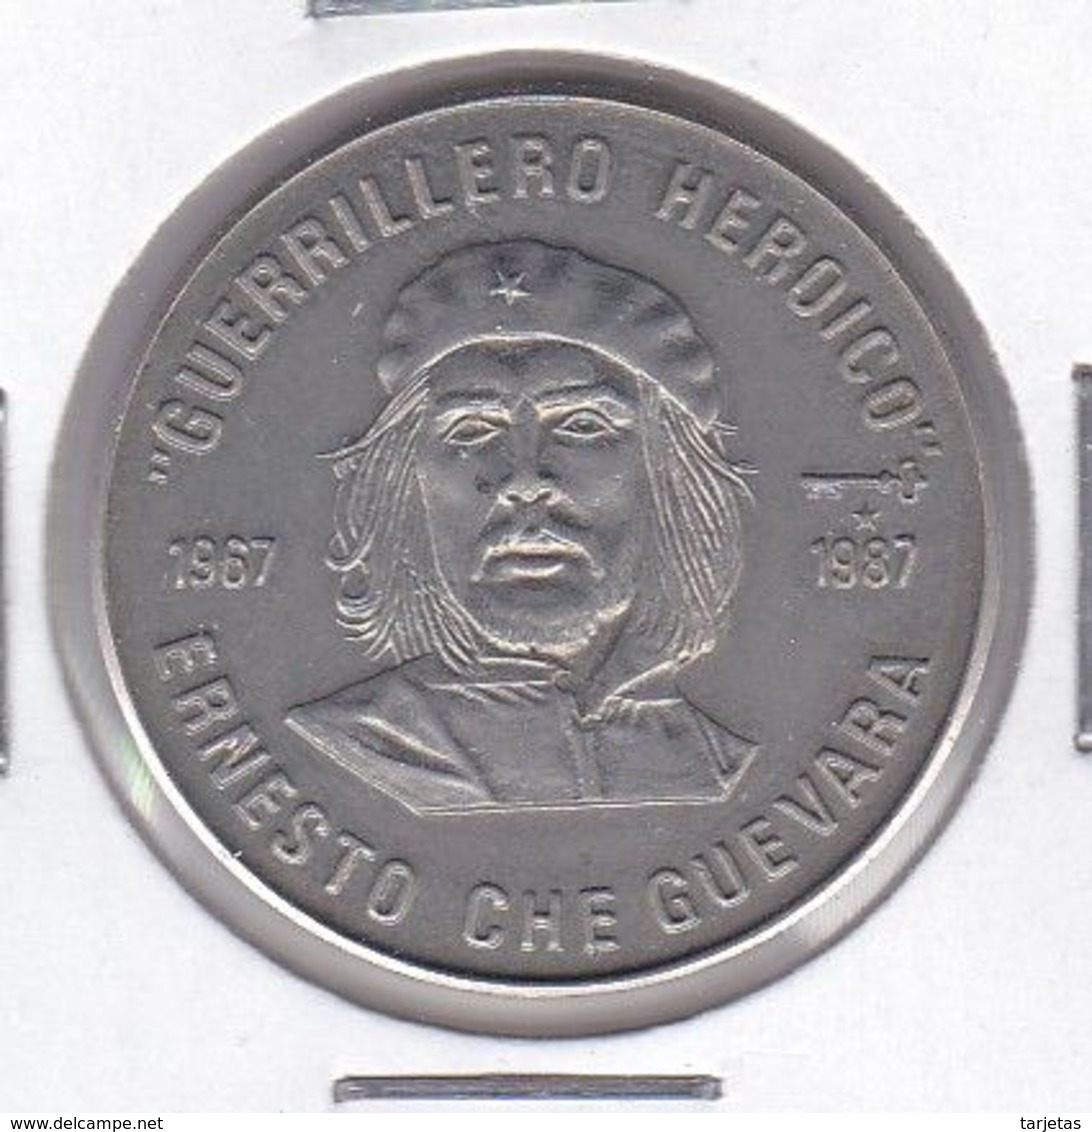 MONEDA DE CUBA DE 1 PESO DEL AÑO 1987 ERNESTO CHE GUEVARA (COIN) (NUEVA - UNC) - Cuba